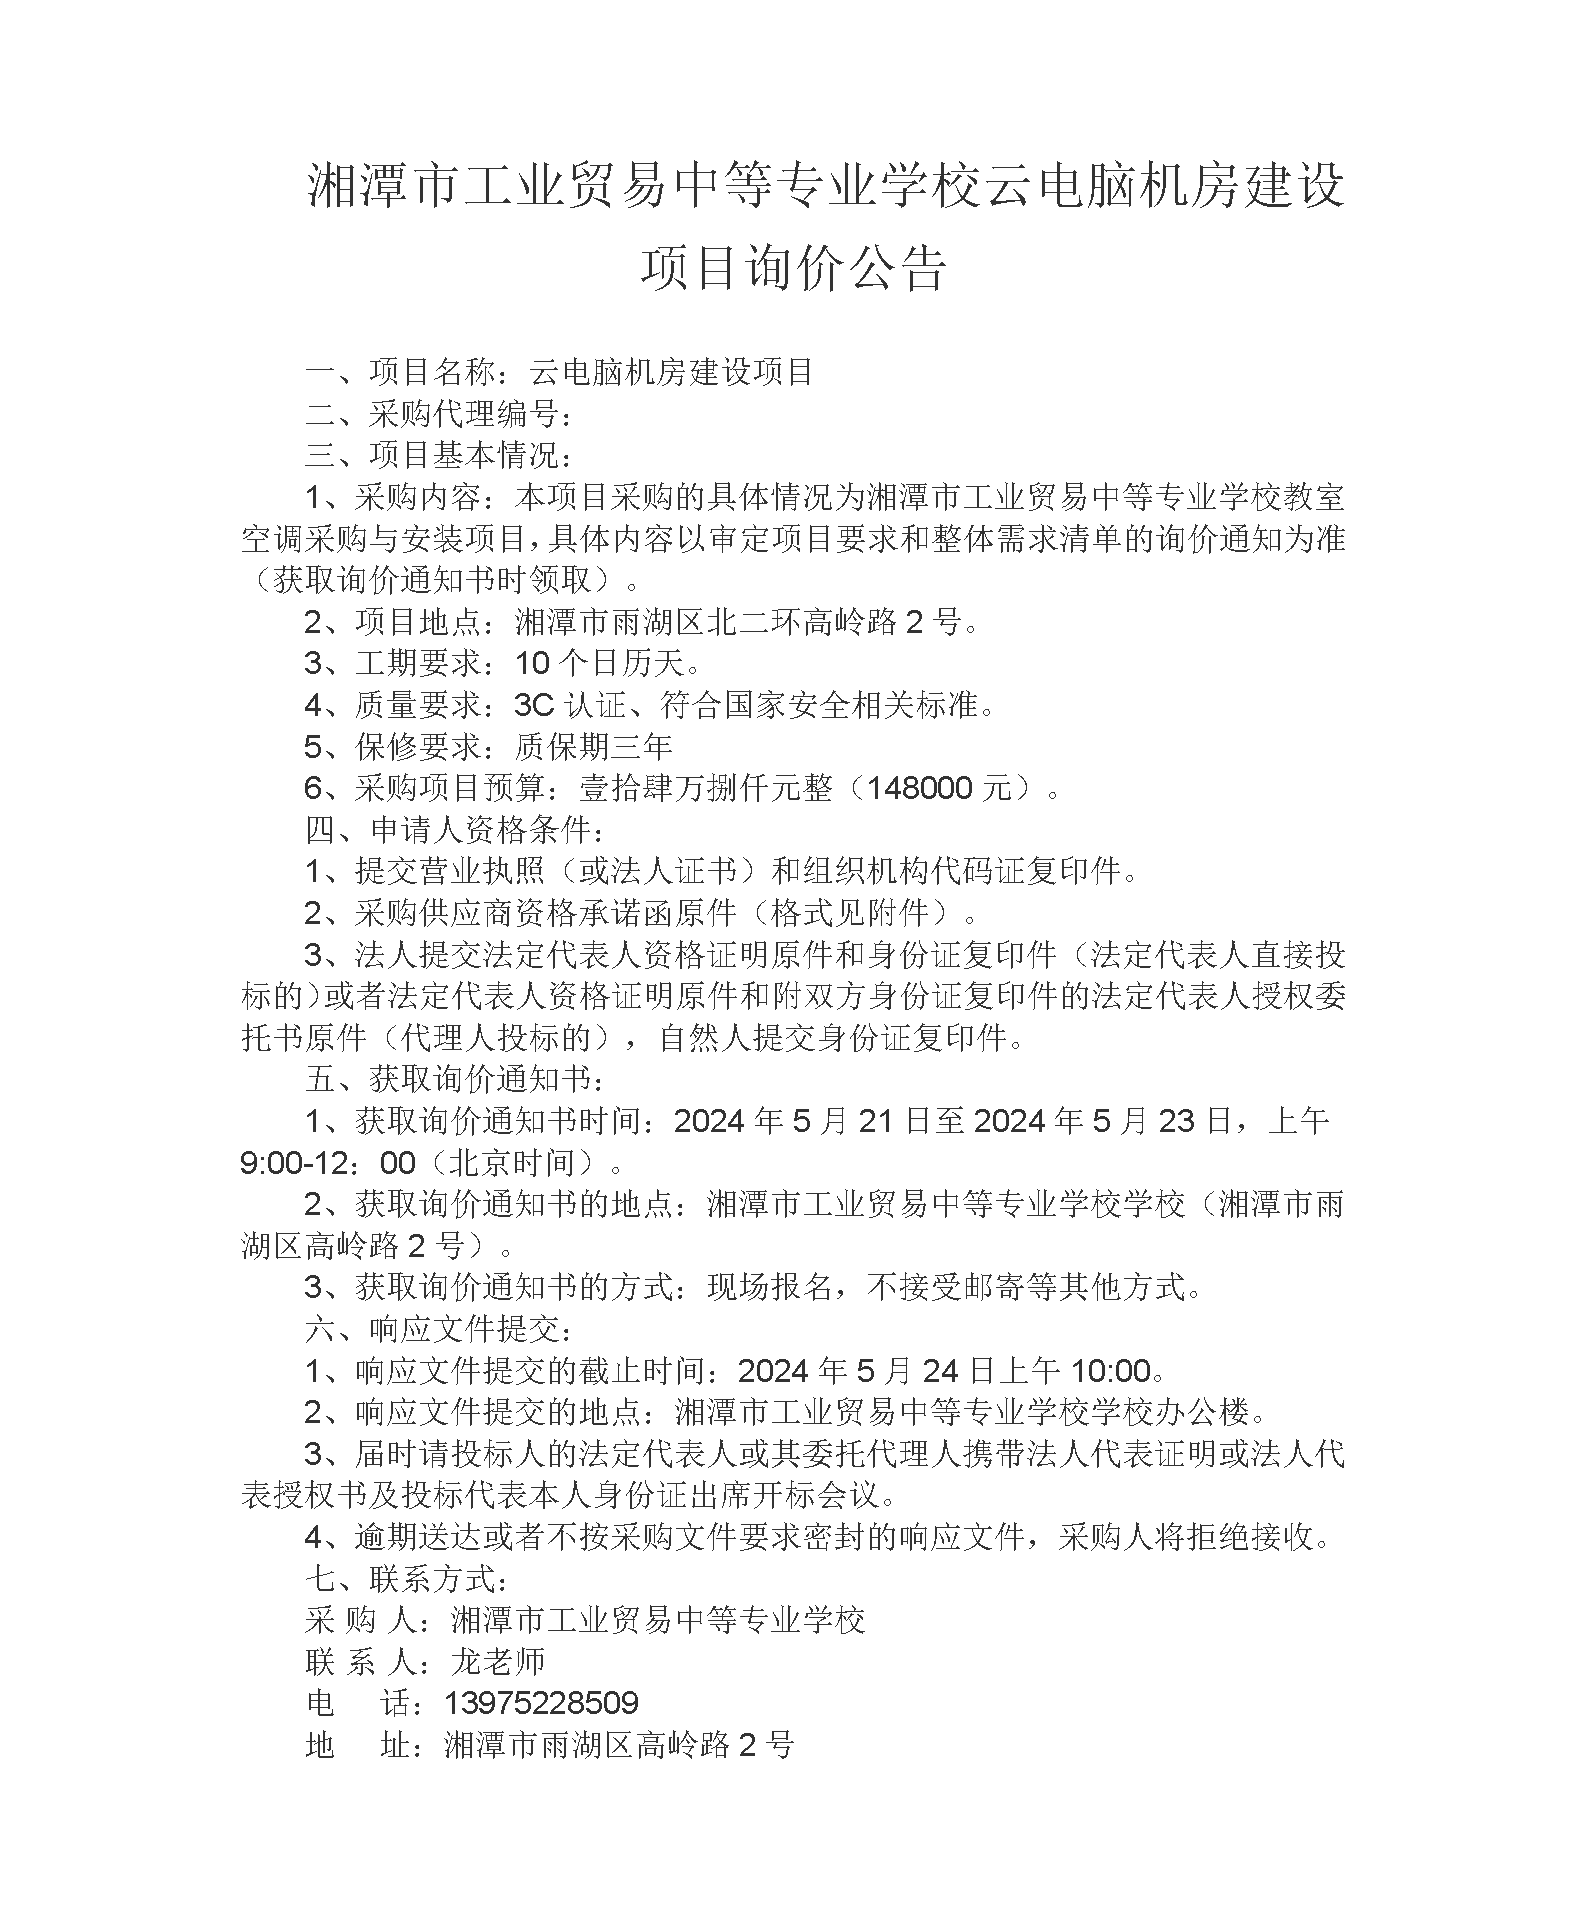 湘潭市工业贸易中等专业学校云电脑机房建设项目询价公告_01.png